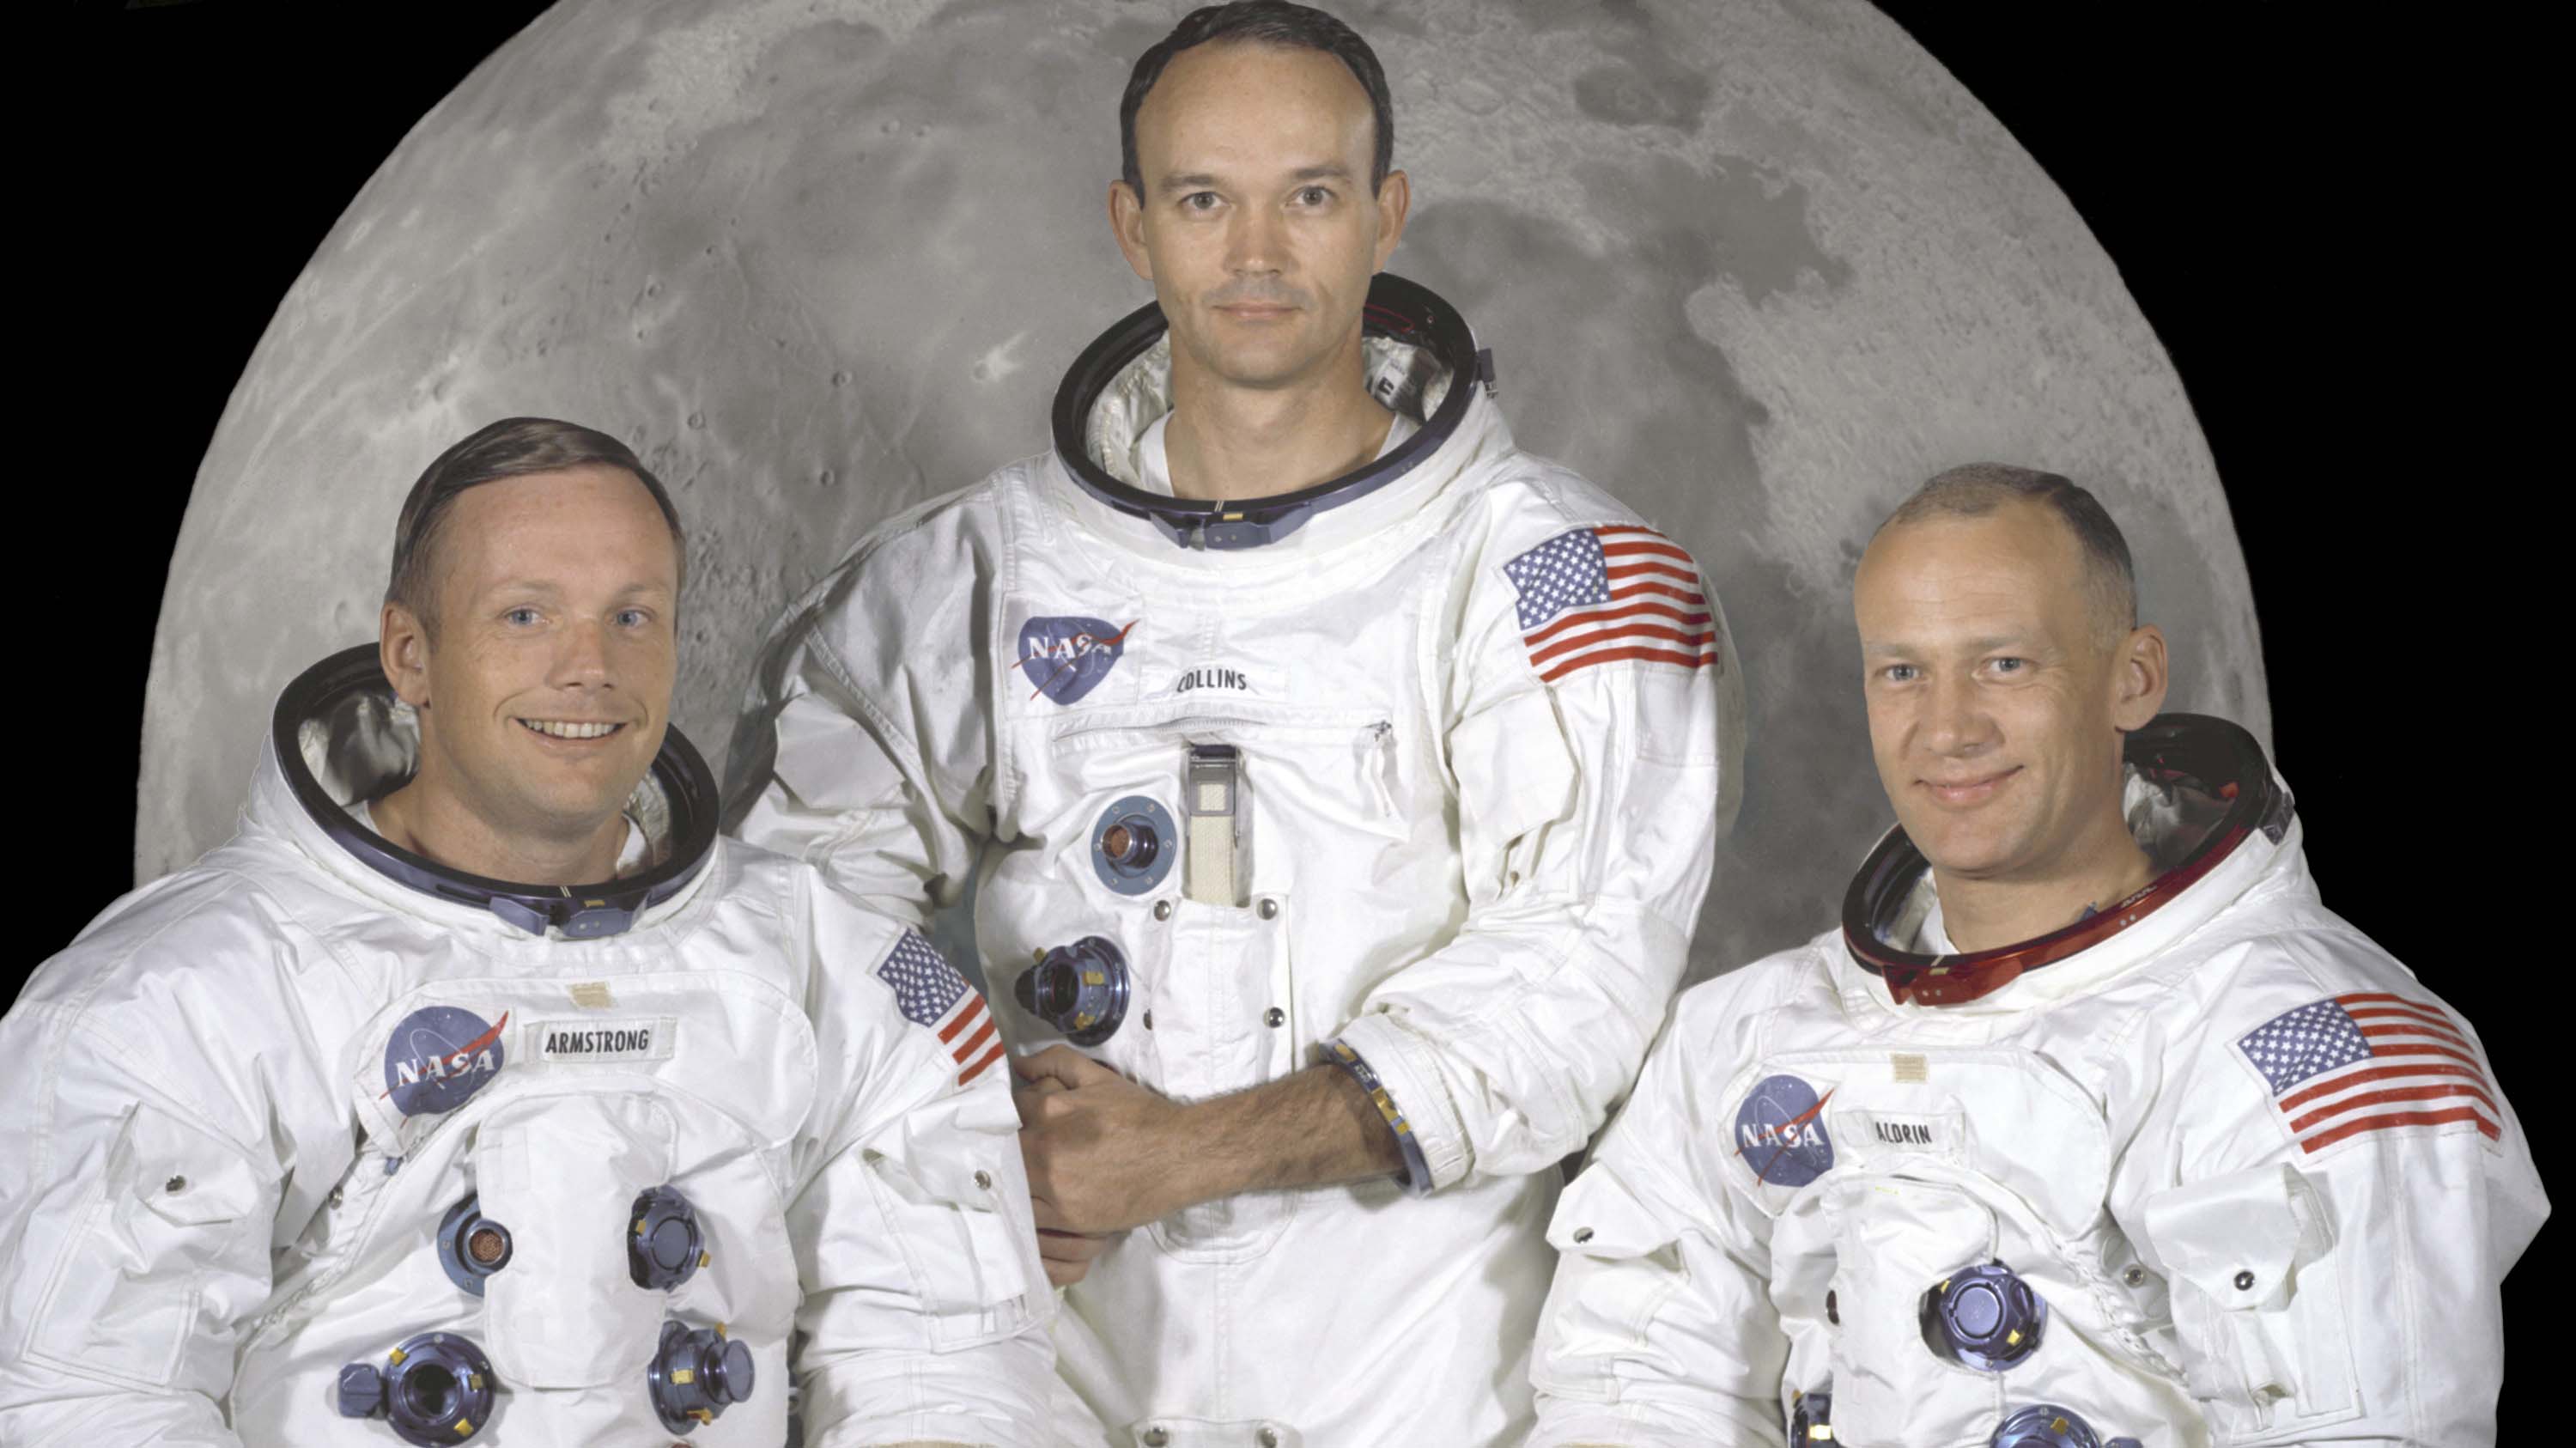  la tripulación del Apolo 11 formada por los astronautas estadounidenses Neil Armstrong, (I) que fue el Comandante de la Misión y el primer hombre en pisar la Luna, Edwin "Buzz" Aldrin, (D), que fue el Piloto del Módulo Lunar, y Michael Collins, (C) que fue el piloto del Módulo de Mando.